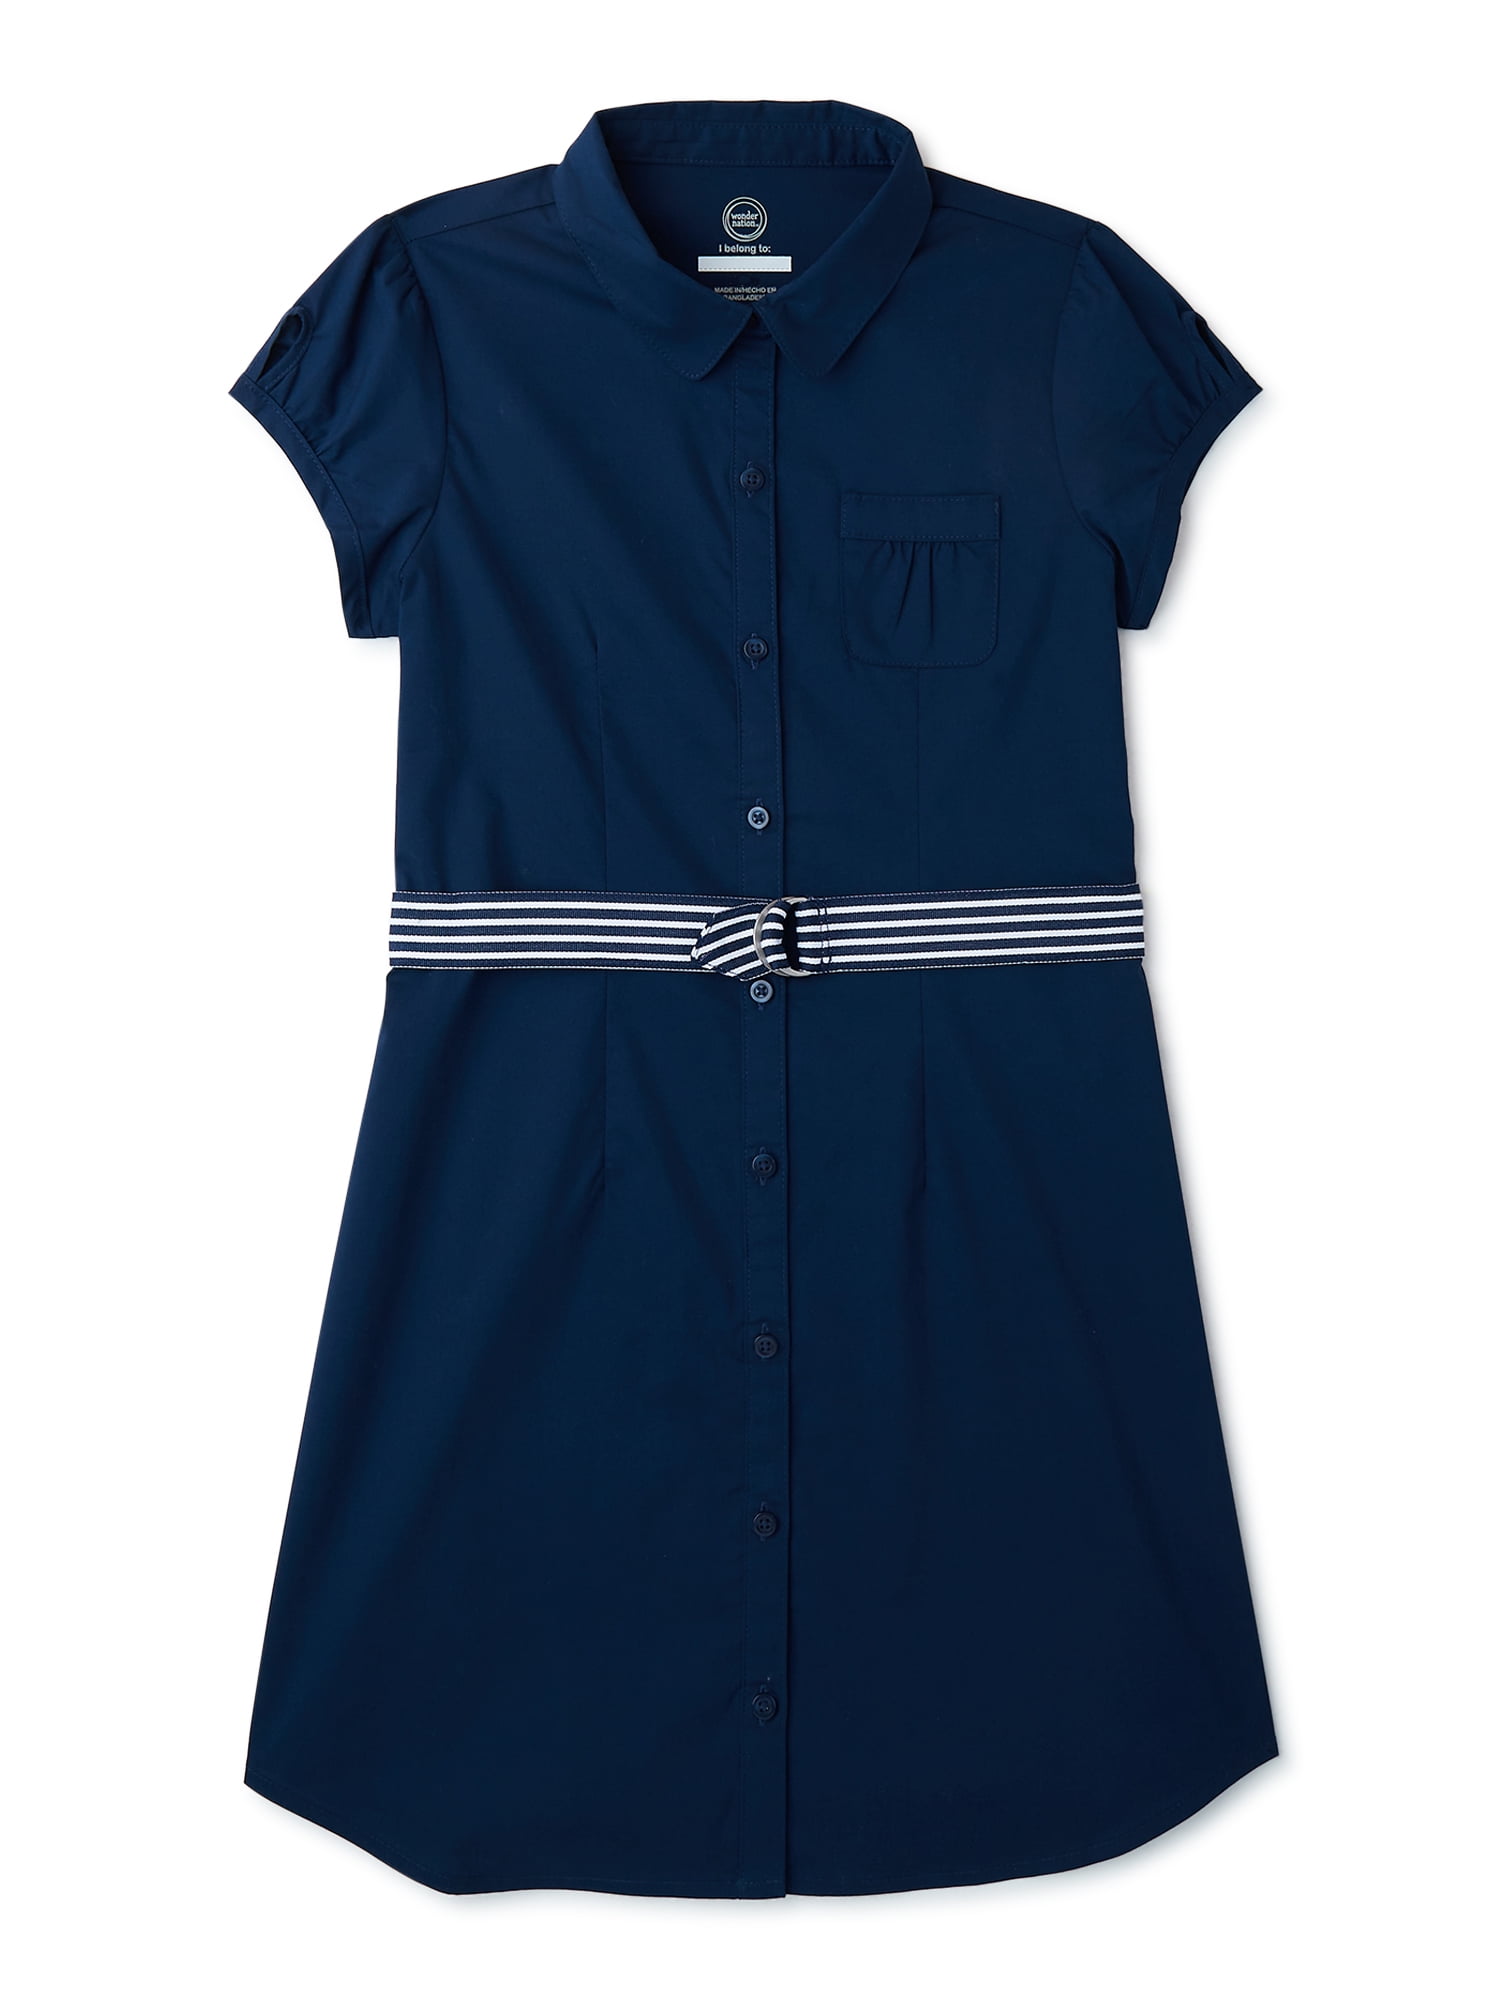 Wonder Nation Girls School Uniform Button Up Shirt Dress Sizes 4 16